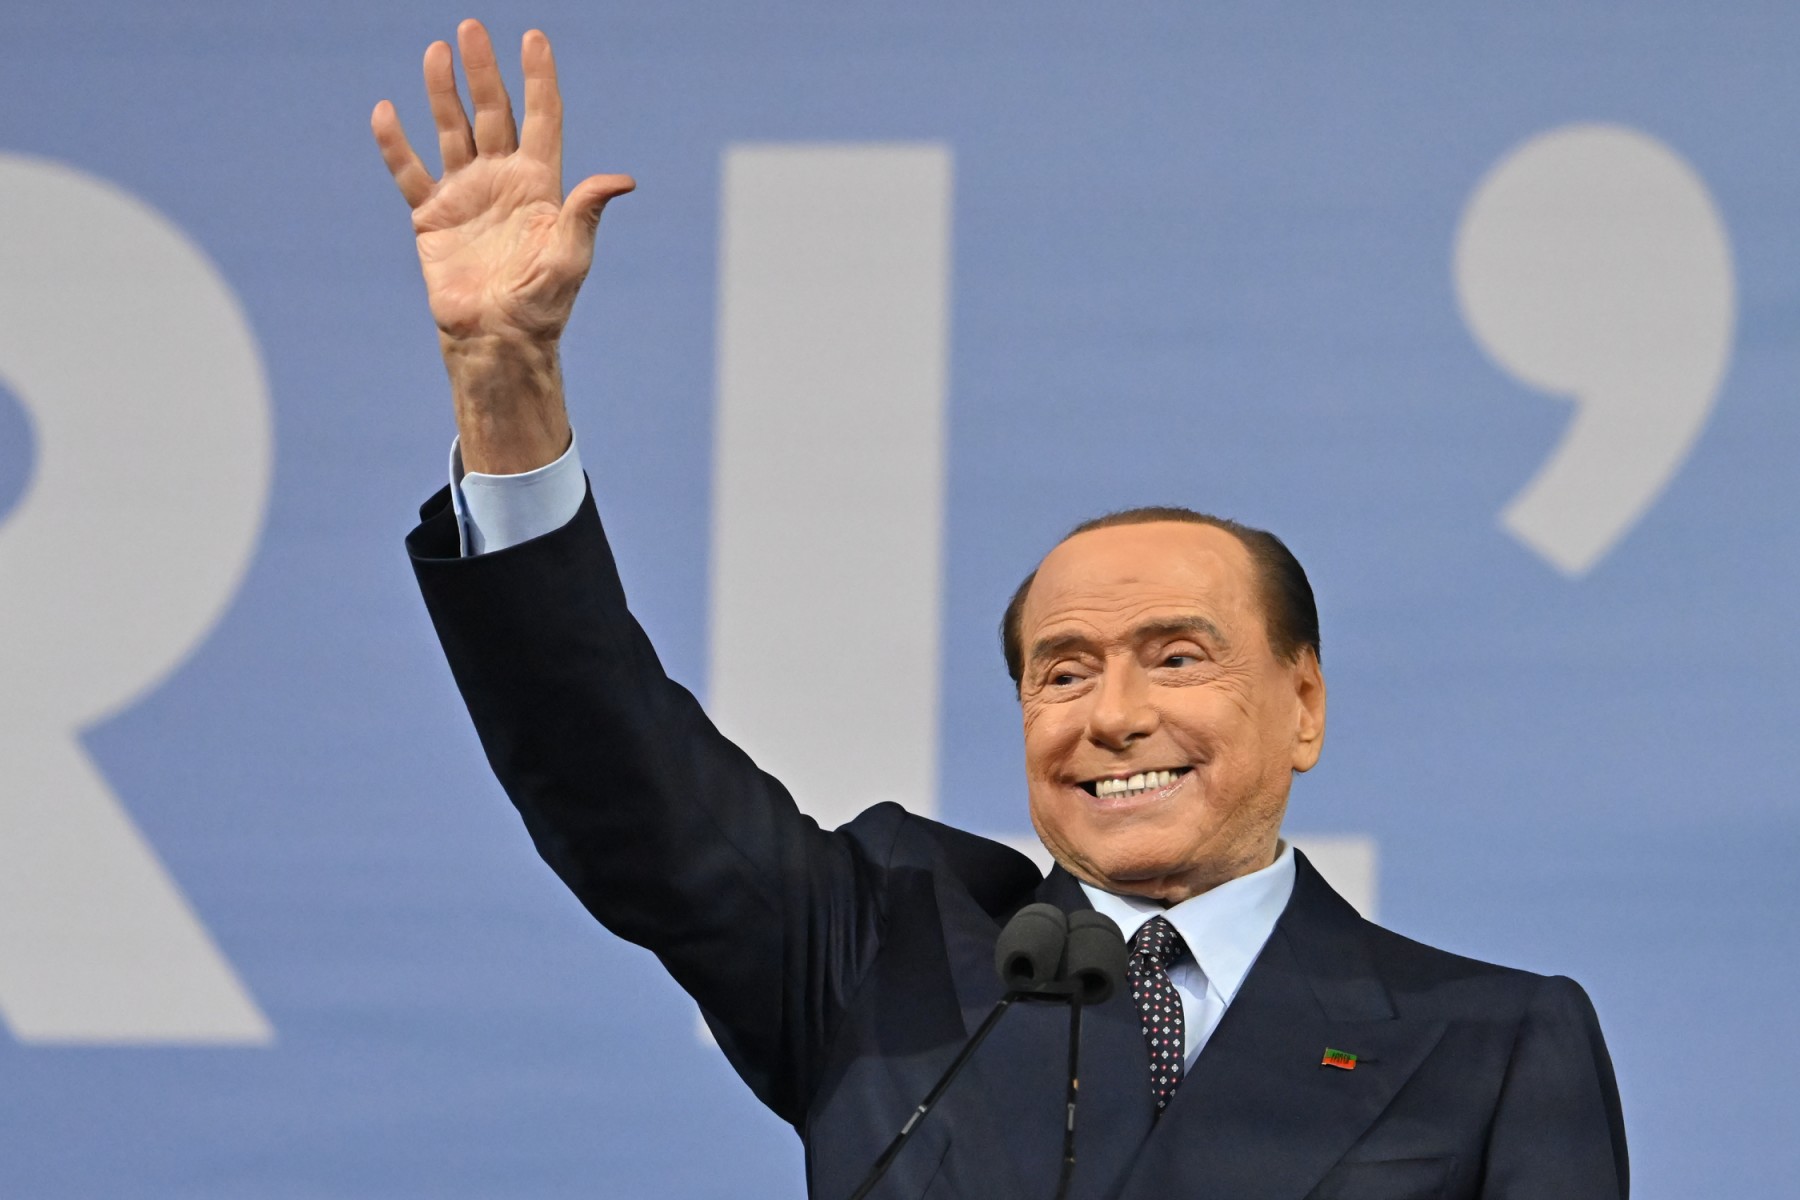 La sucesión en el imperio de Berlusconi apunta a su hija Marina